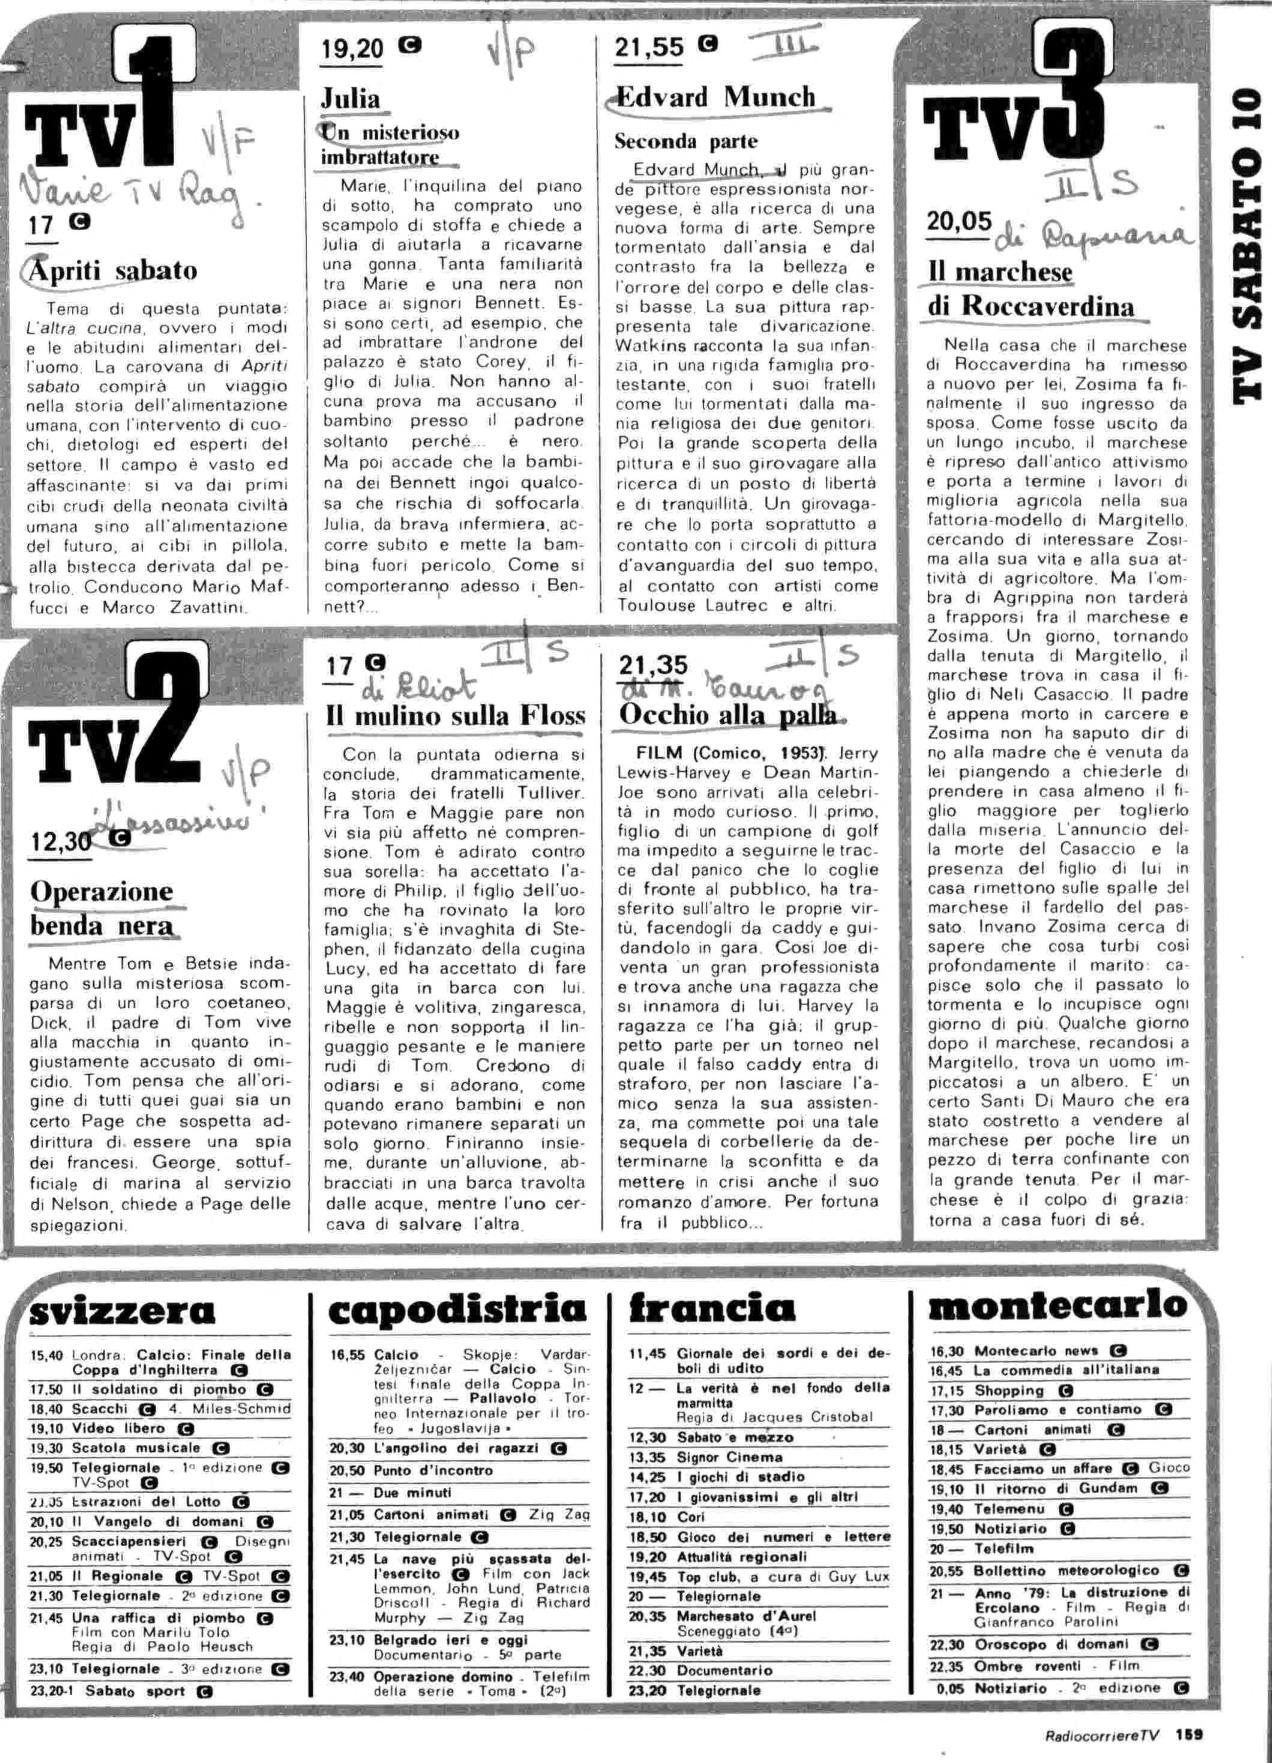 RC-1980-19_0158.jp2&id=Radiocorriere-198